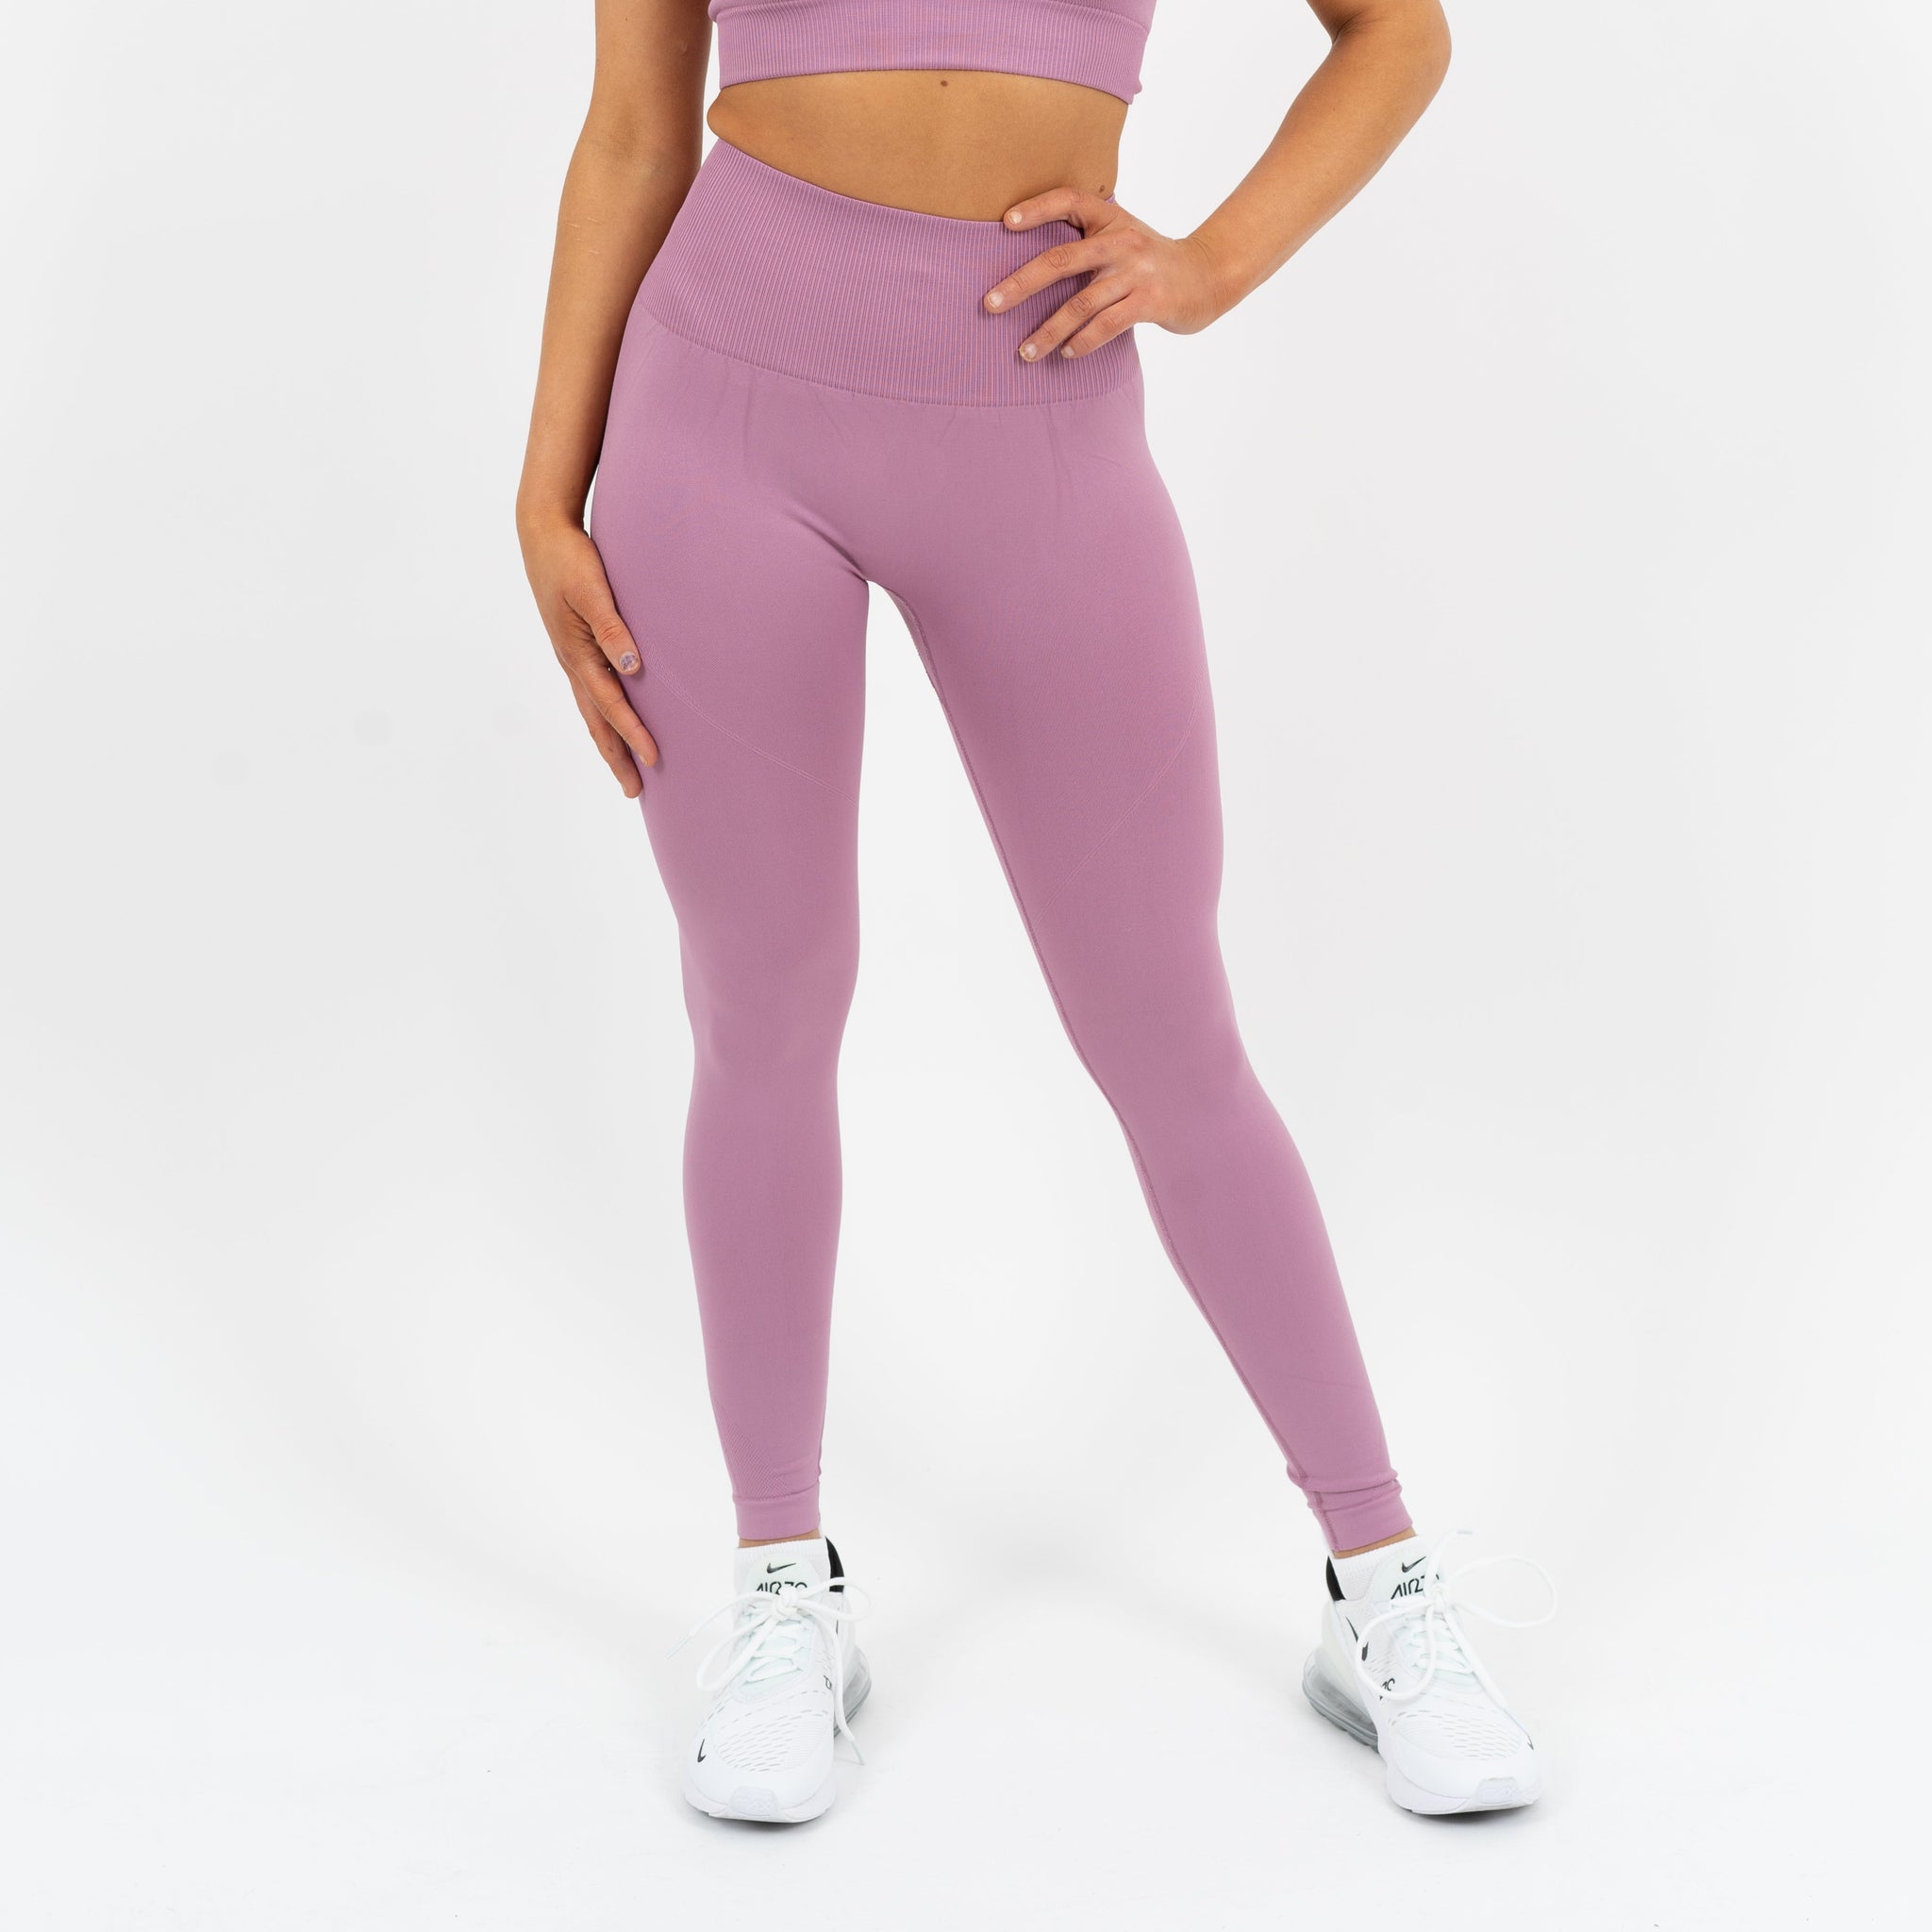 Seamless Leggings Women - Pink – Gymsupply